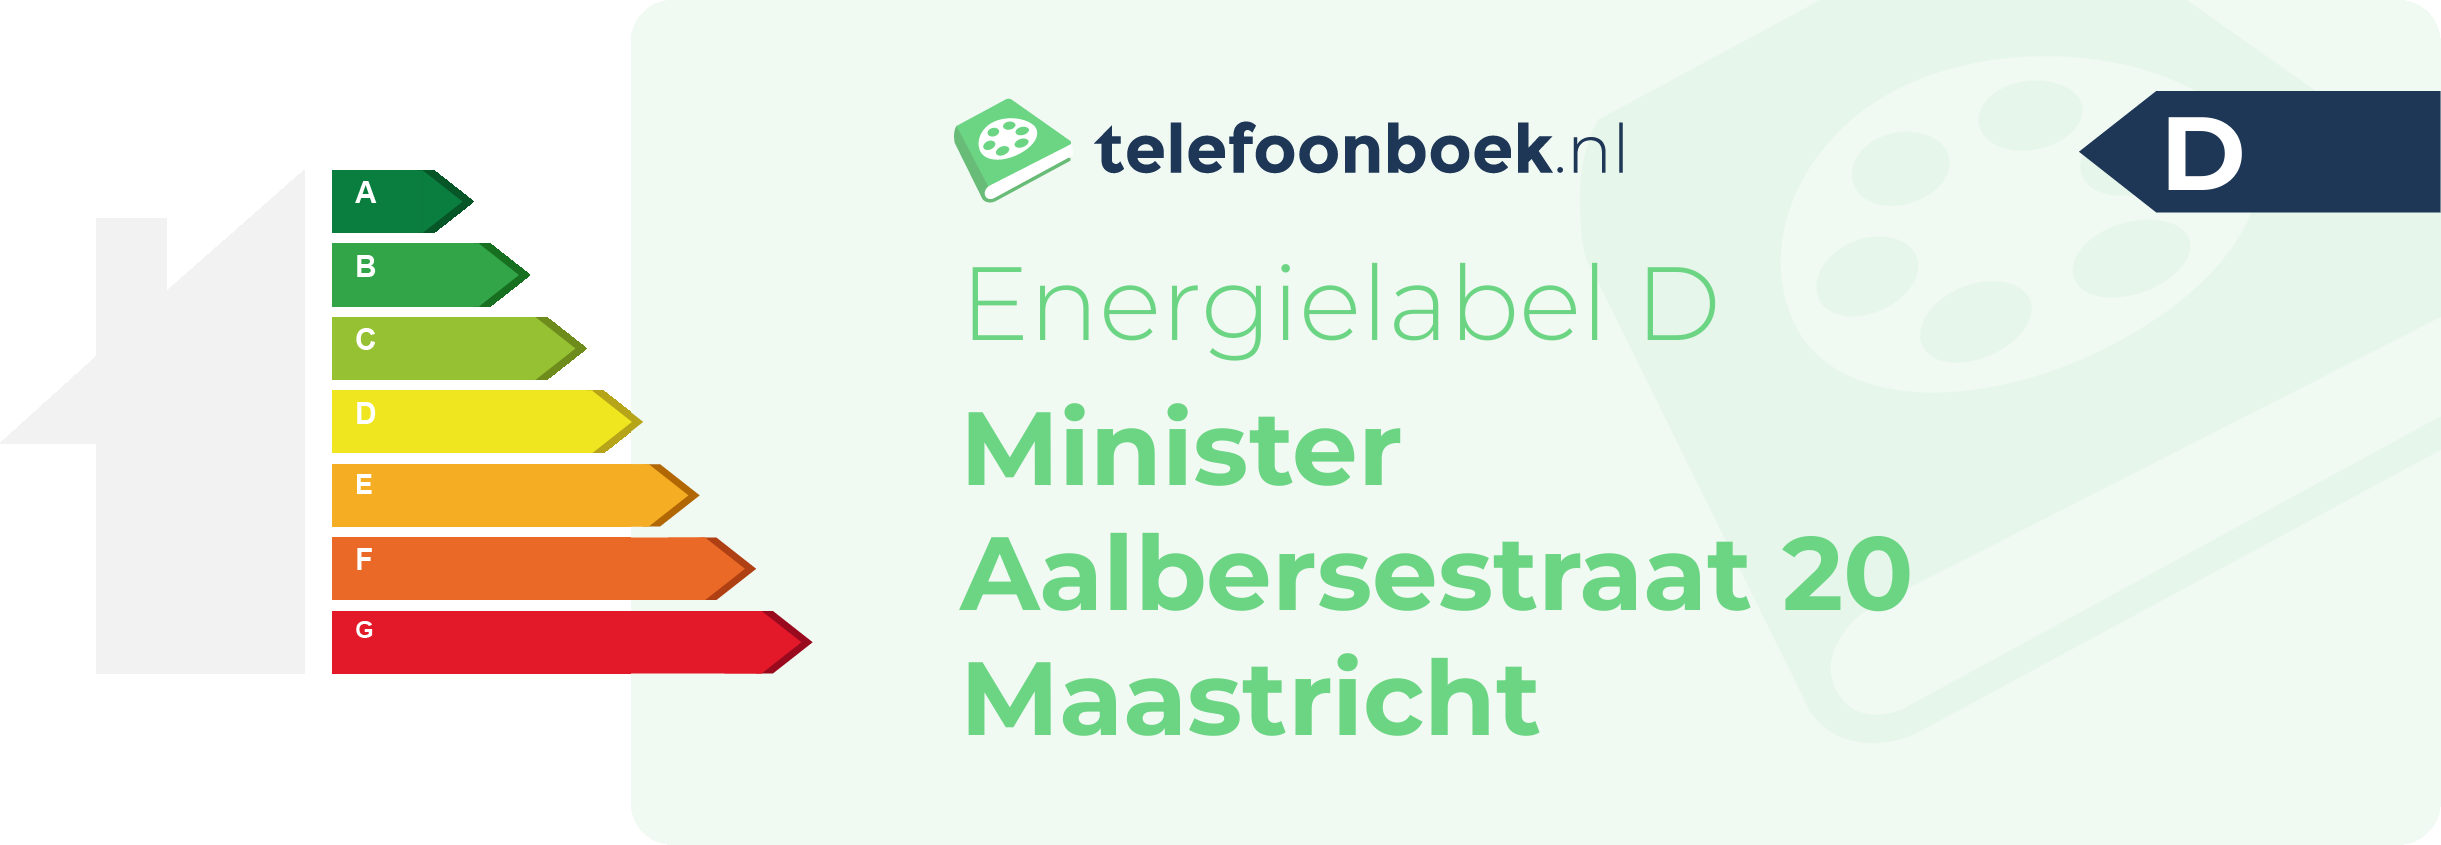 Energielabel Minister Aalbersestraat 20 Maastricht